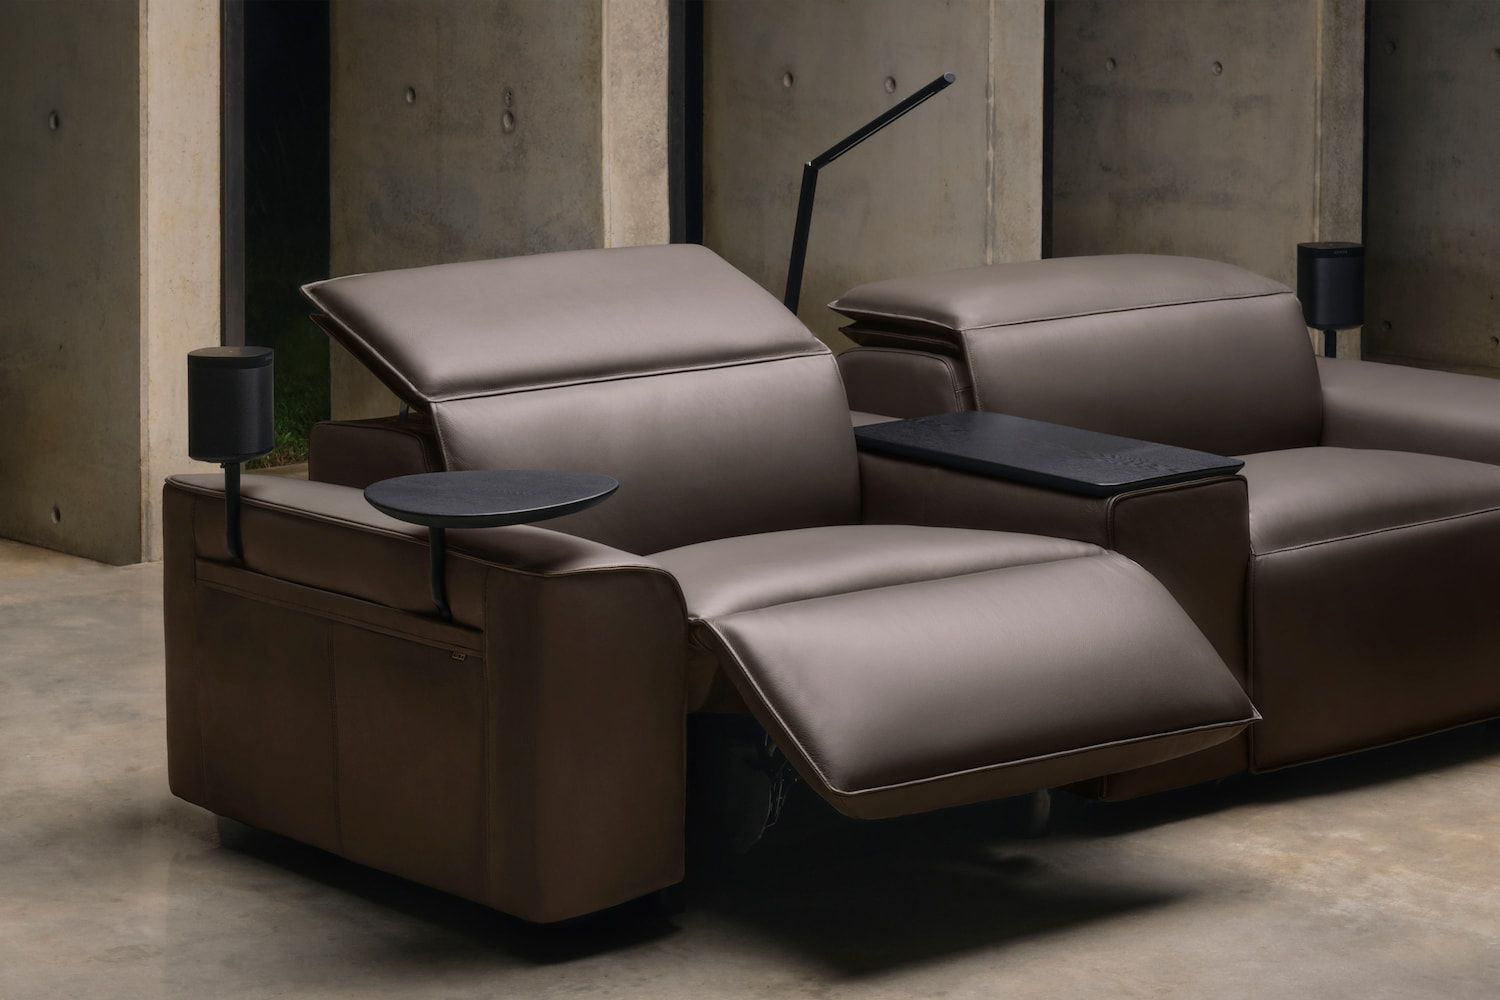 Modern Recliner Sofa Design Ideas